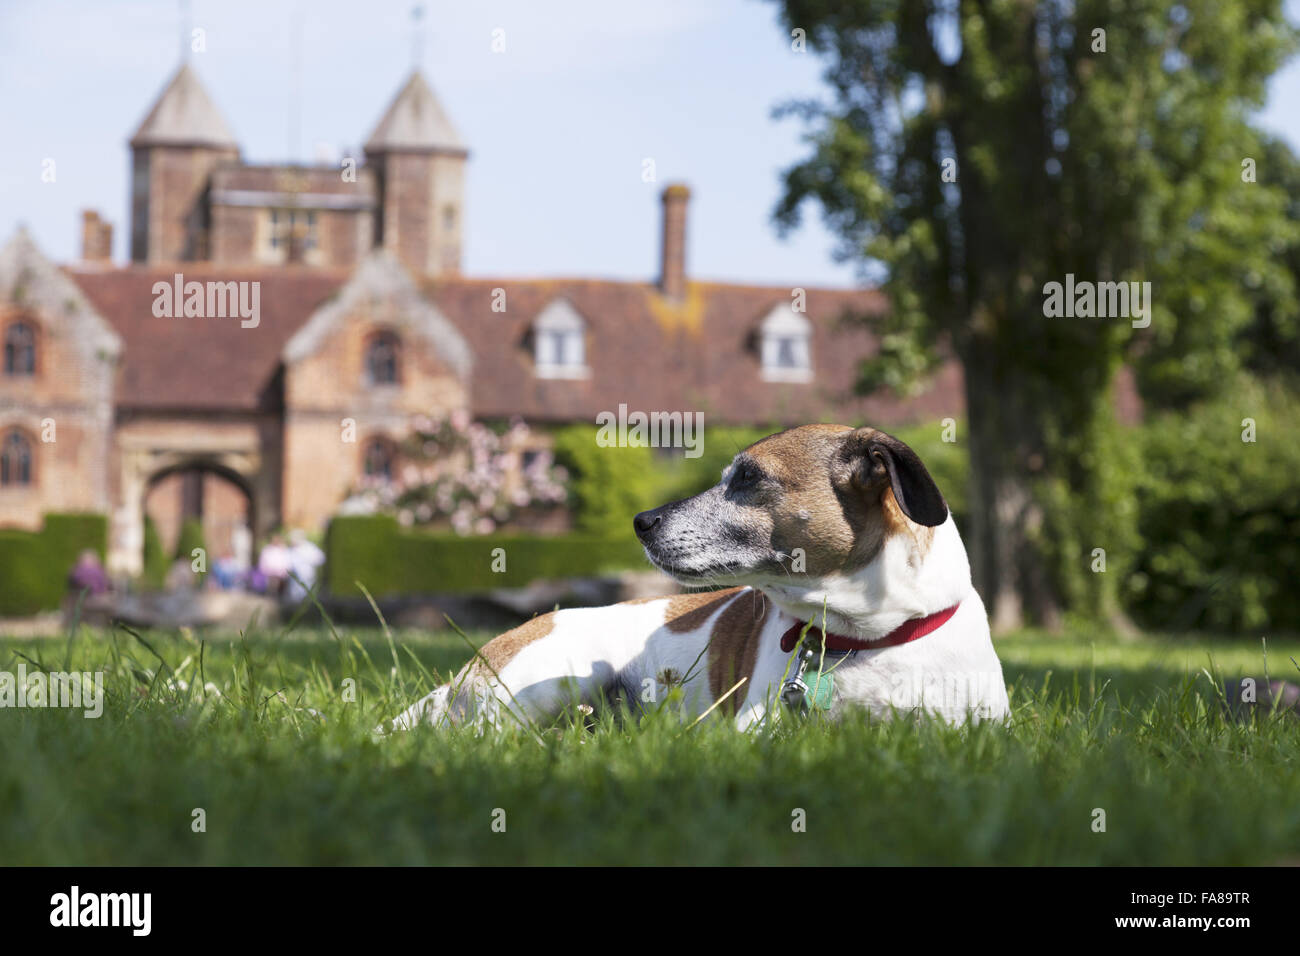 Ein Hund, genießen Sie die Gärten von Sissinghurst Castle, Kent. Sissinghurst erlangte internationale Bekanntheit in den 1930er Jahren, Vita Sackville-West und Harold Nicolson dort einen Garten erstellt. Stockfoto